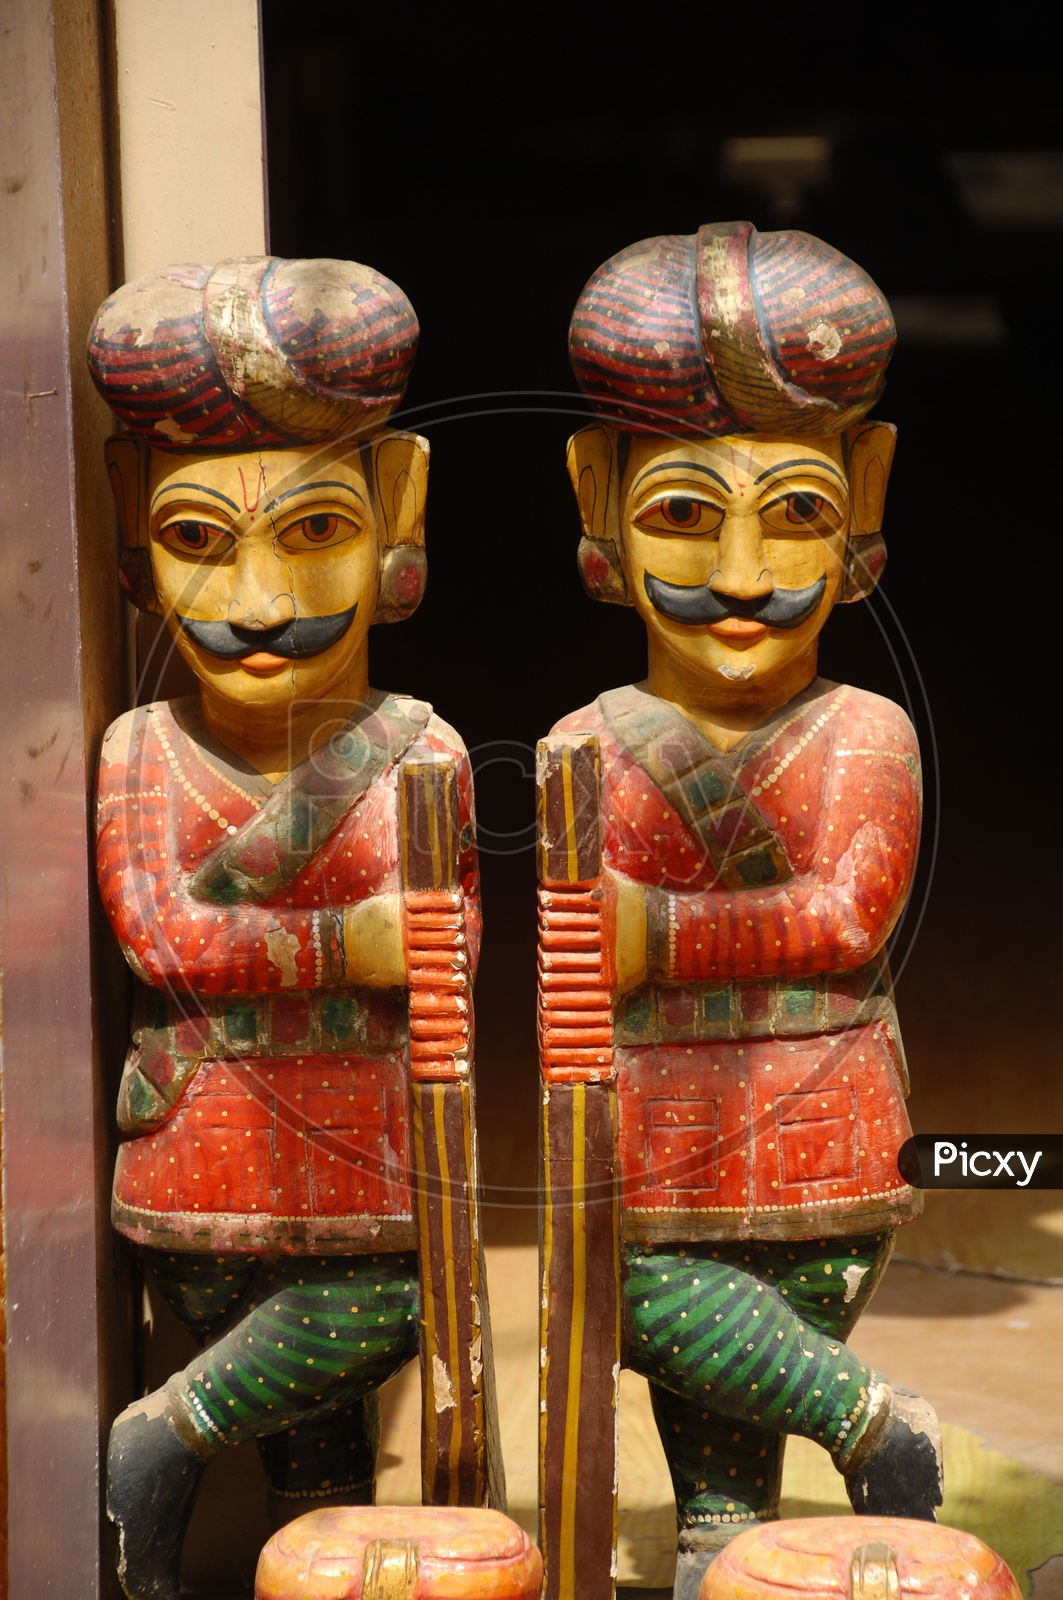 Handicraft statues of two men